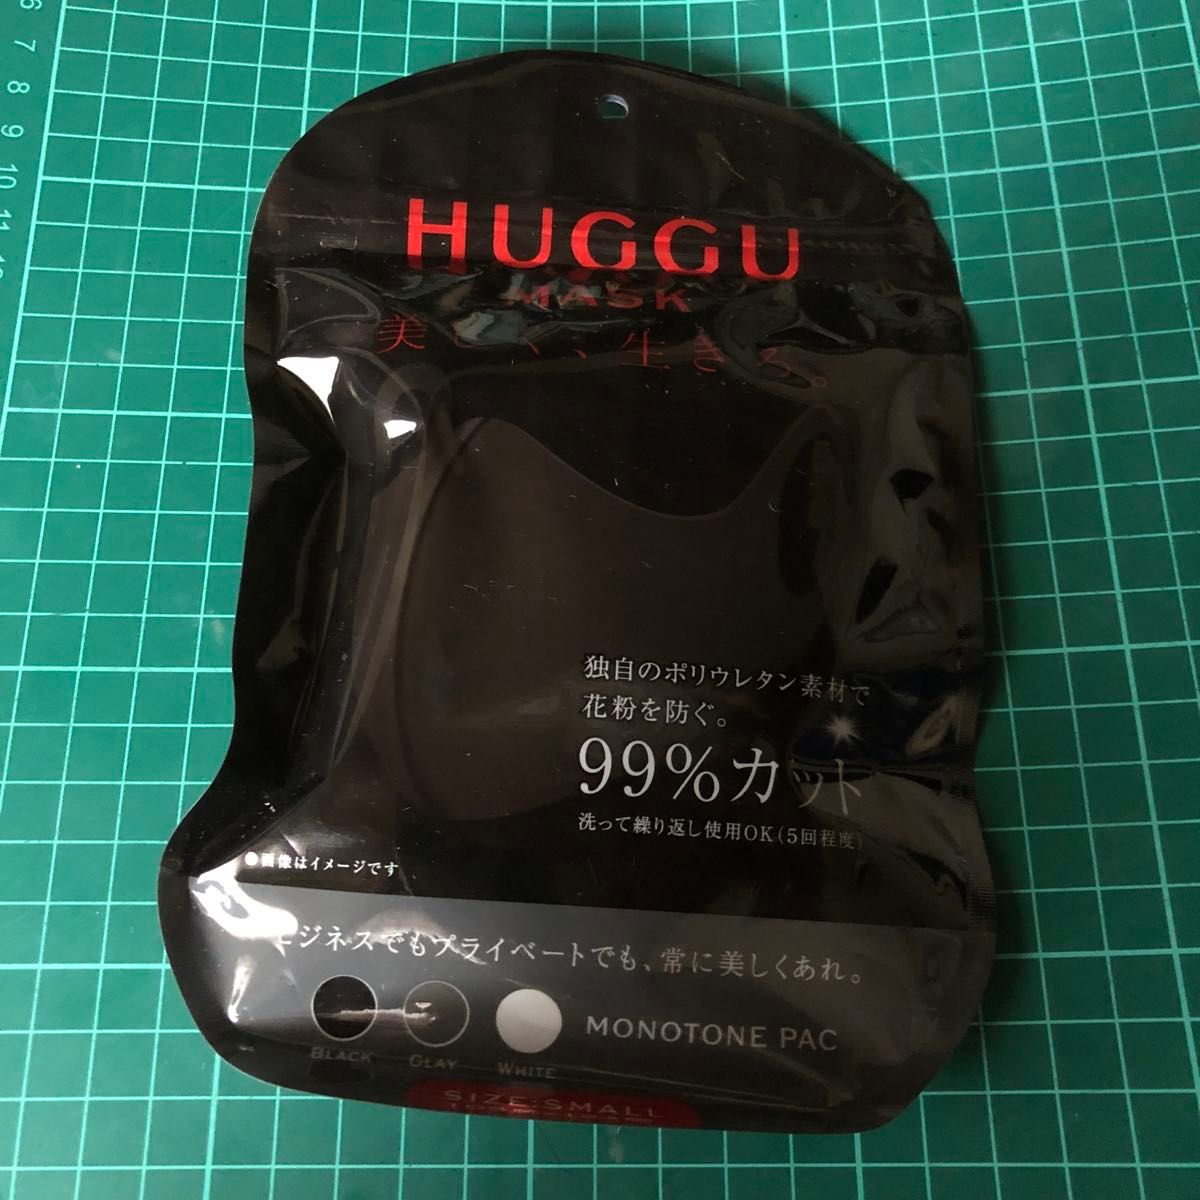 新品 HUGGU MASK ポリウレタン マスク 花粉対策 3枚入り ブラック グレー ホワイト 黒 白 灰色